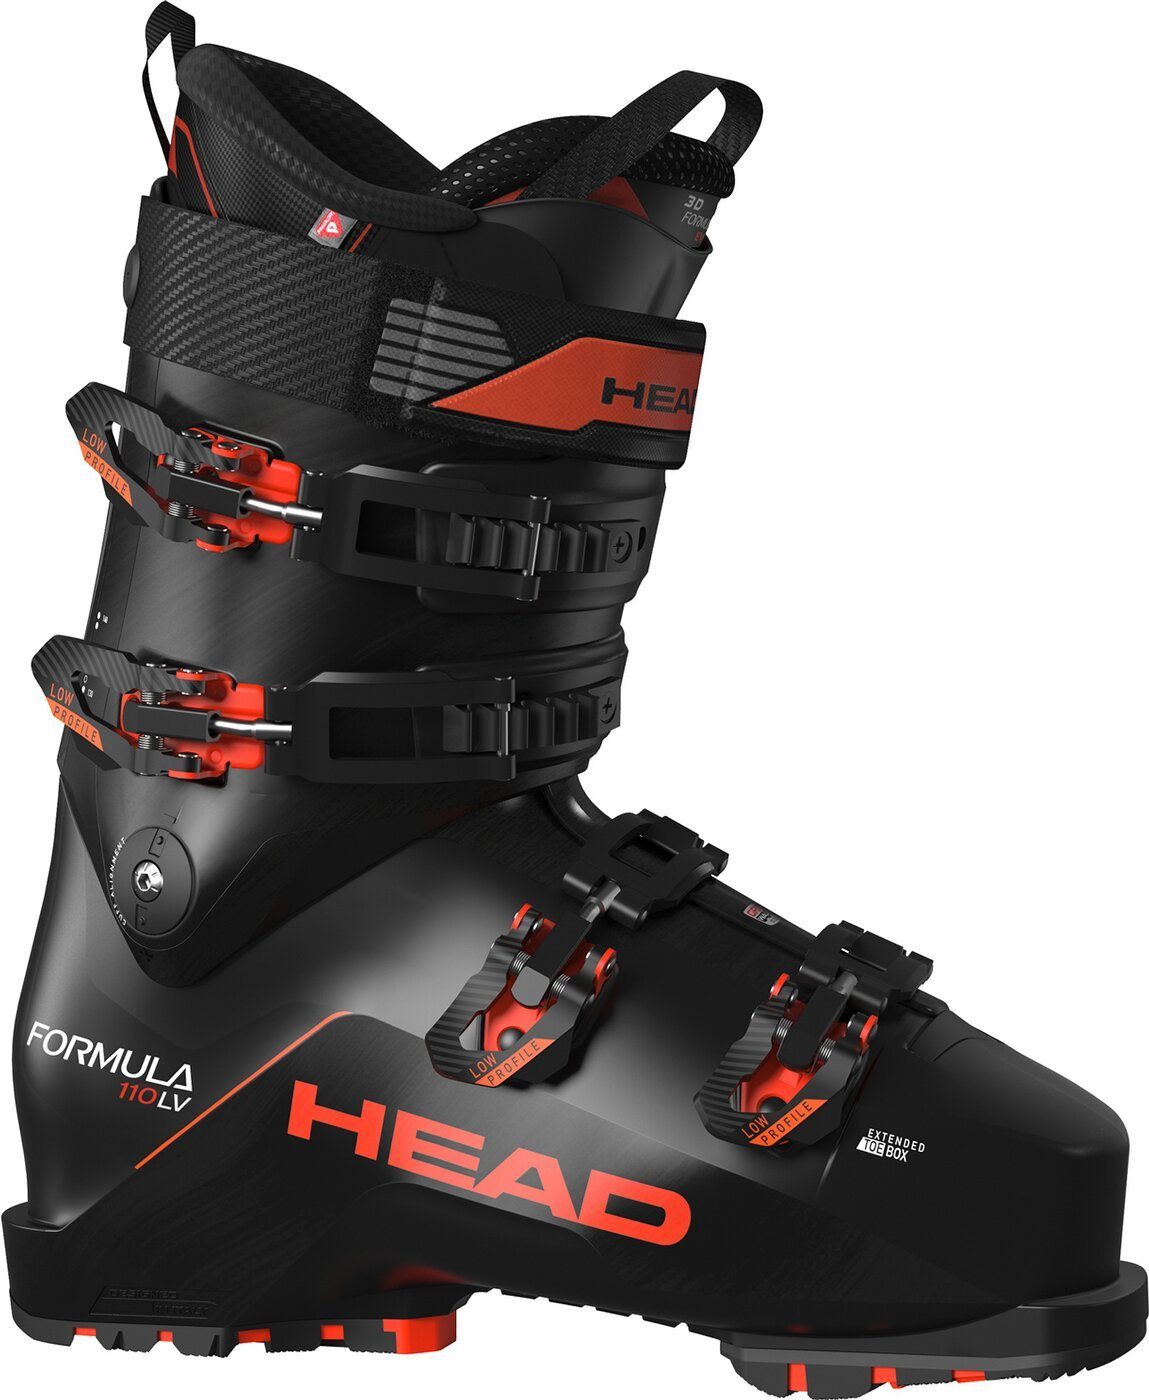 Head Ski FORMULA 110 LV GW BLACK/RED -